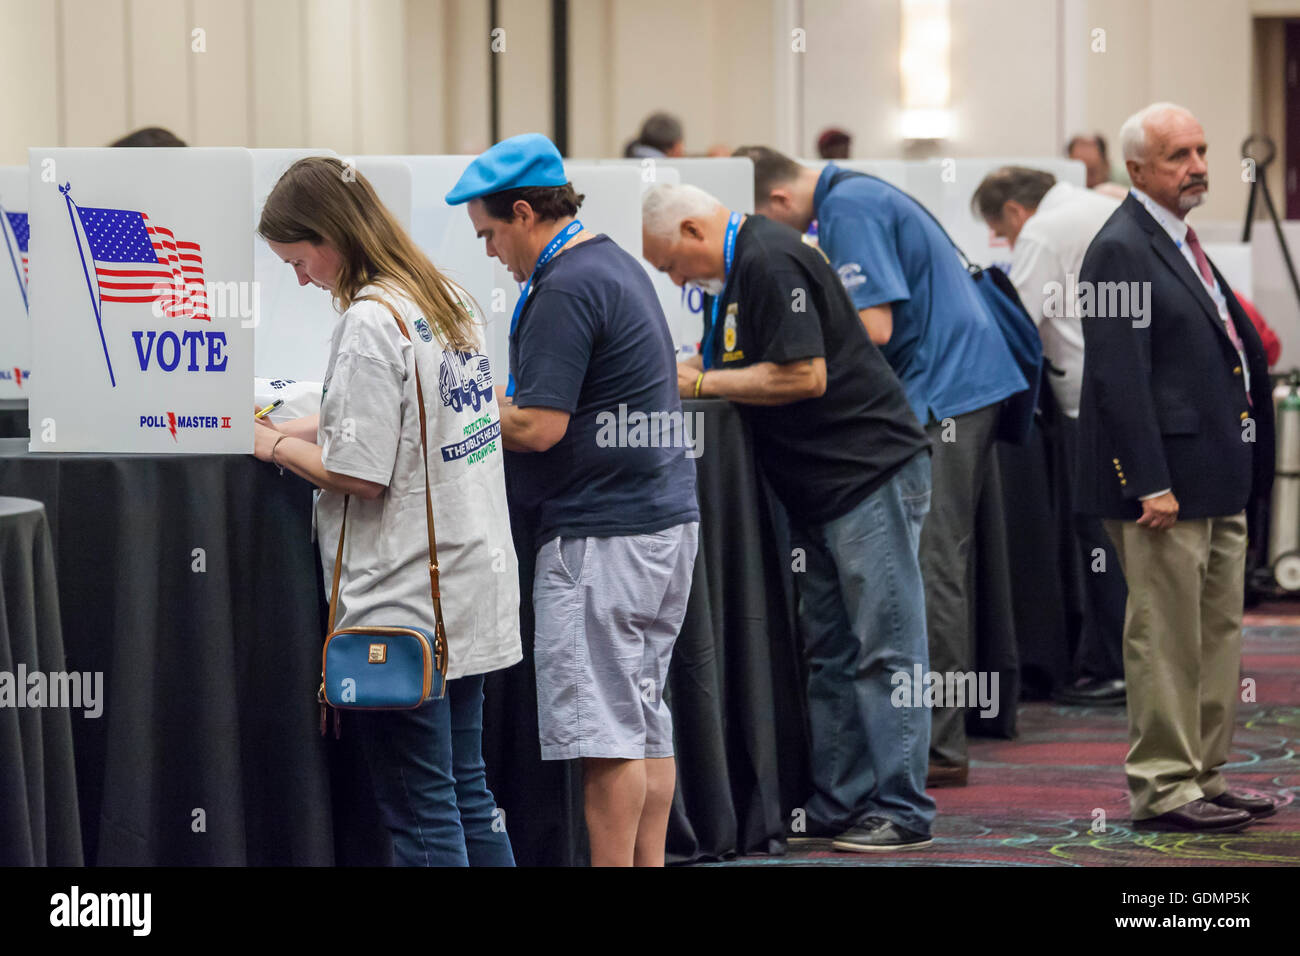 Las Vegas, Nevada - Delegierten der Teamsters Union Versammlung Stimmen Stimmzettel bei der Abstimmung Kandidaten für union Büros zu nominieren. Stockfoto